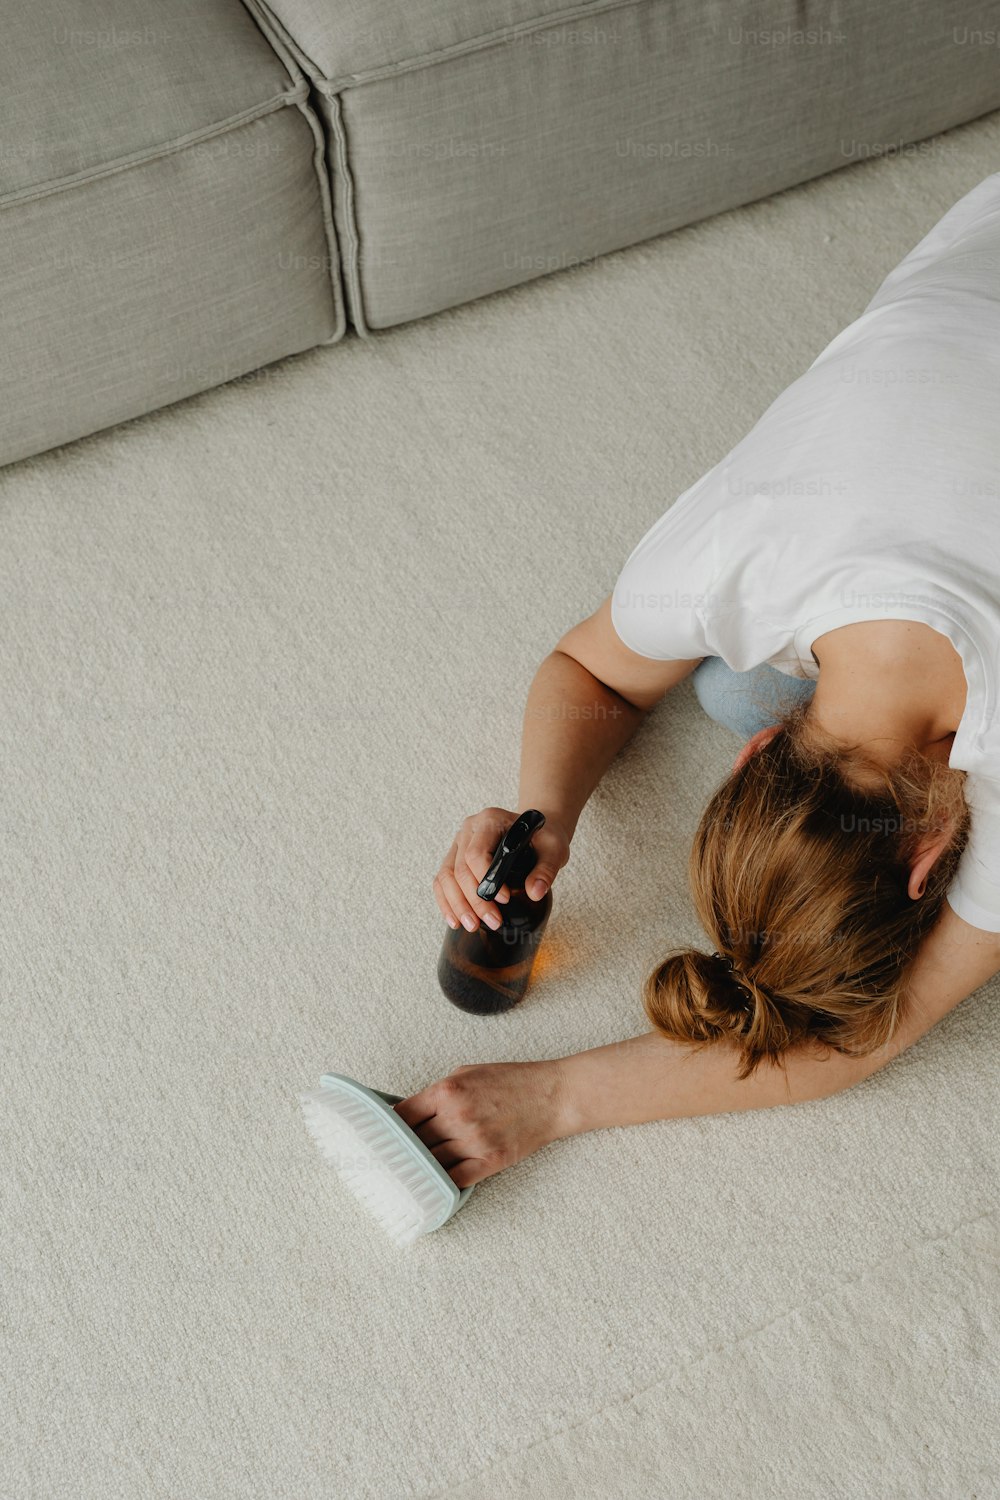 Une femme allongée sur le sol avec une bouteille de bière